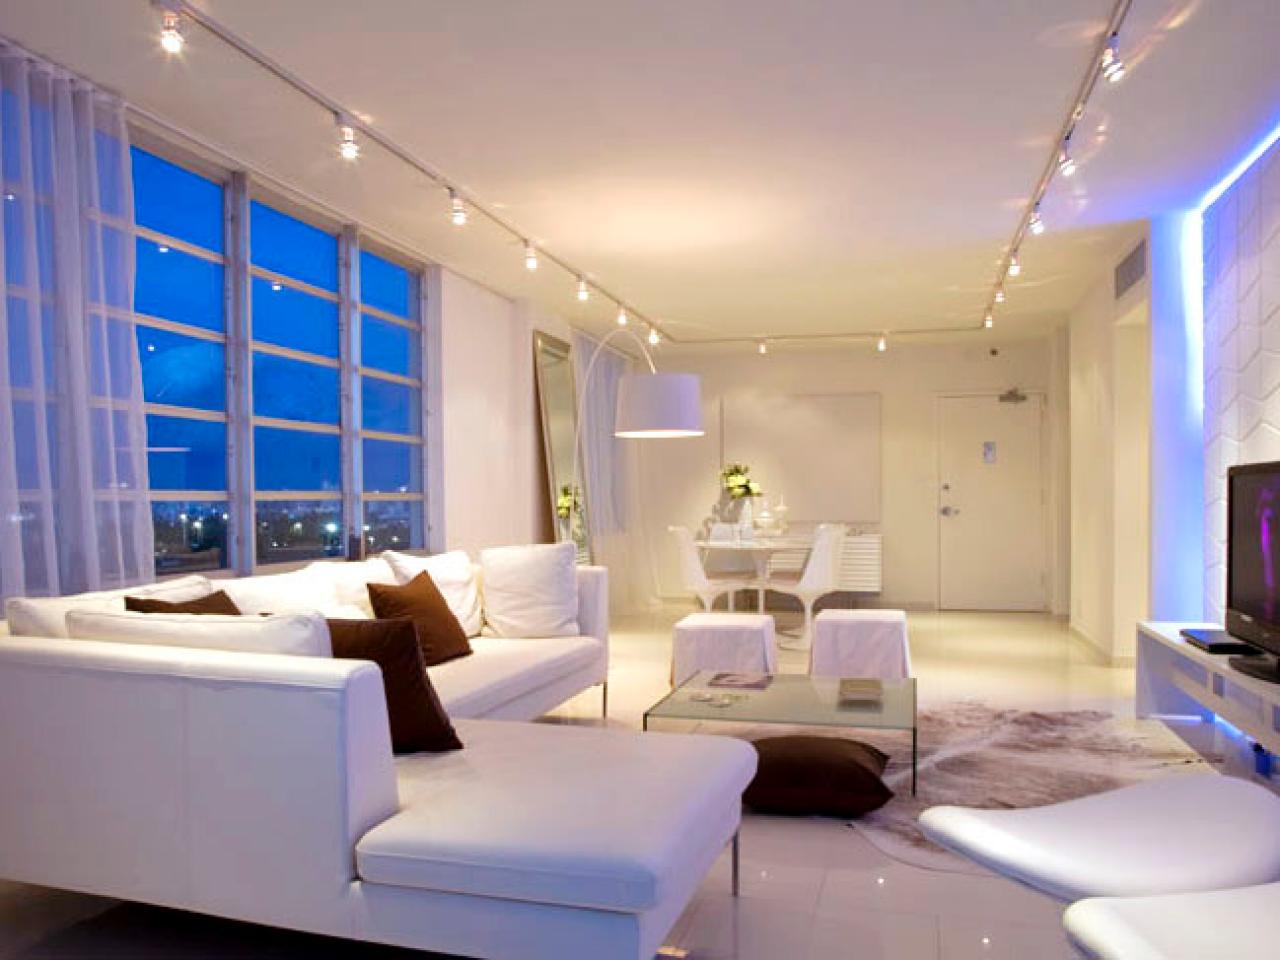 Adding More Light To A Living Room